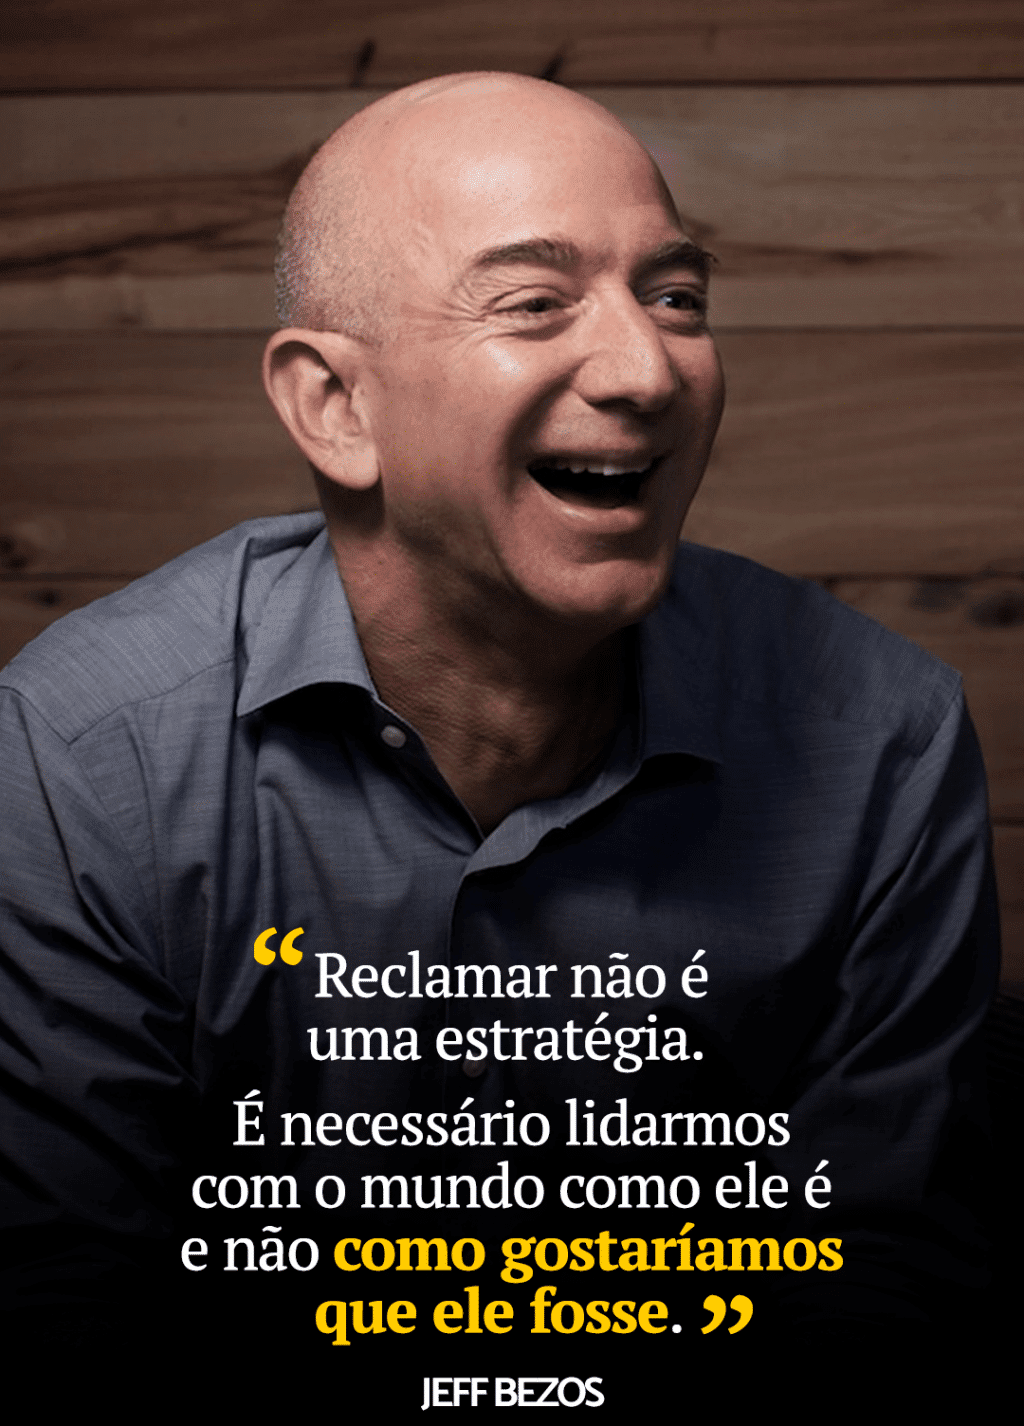 "Reclamar não é uma estratégia" Jeff Bezos.